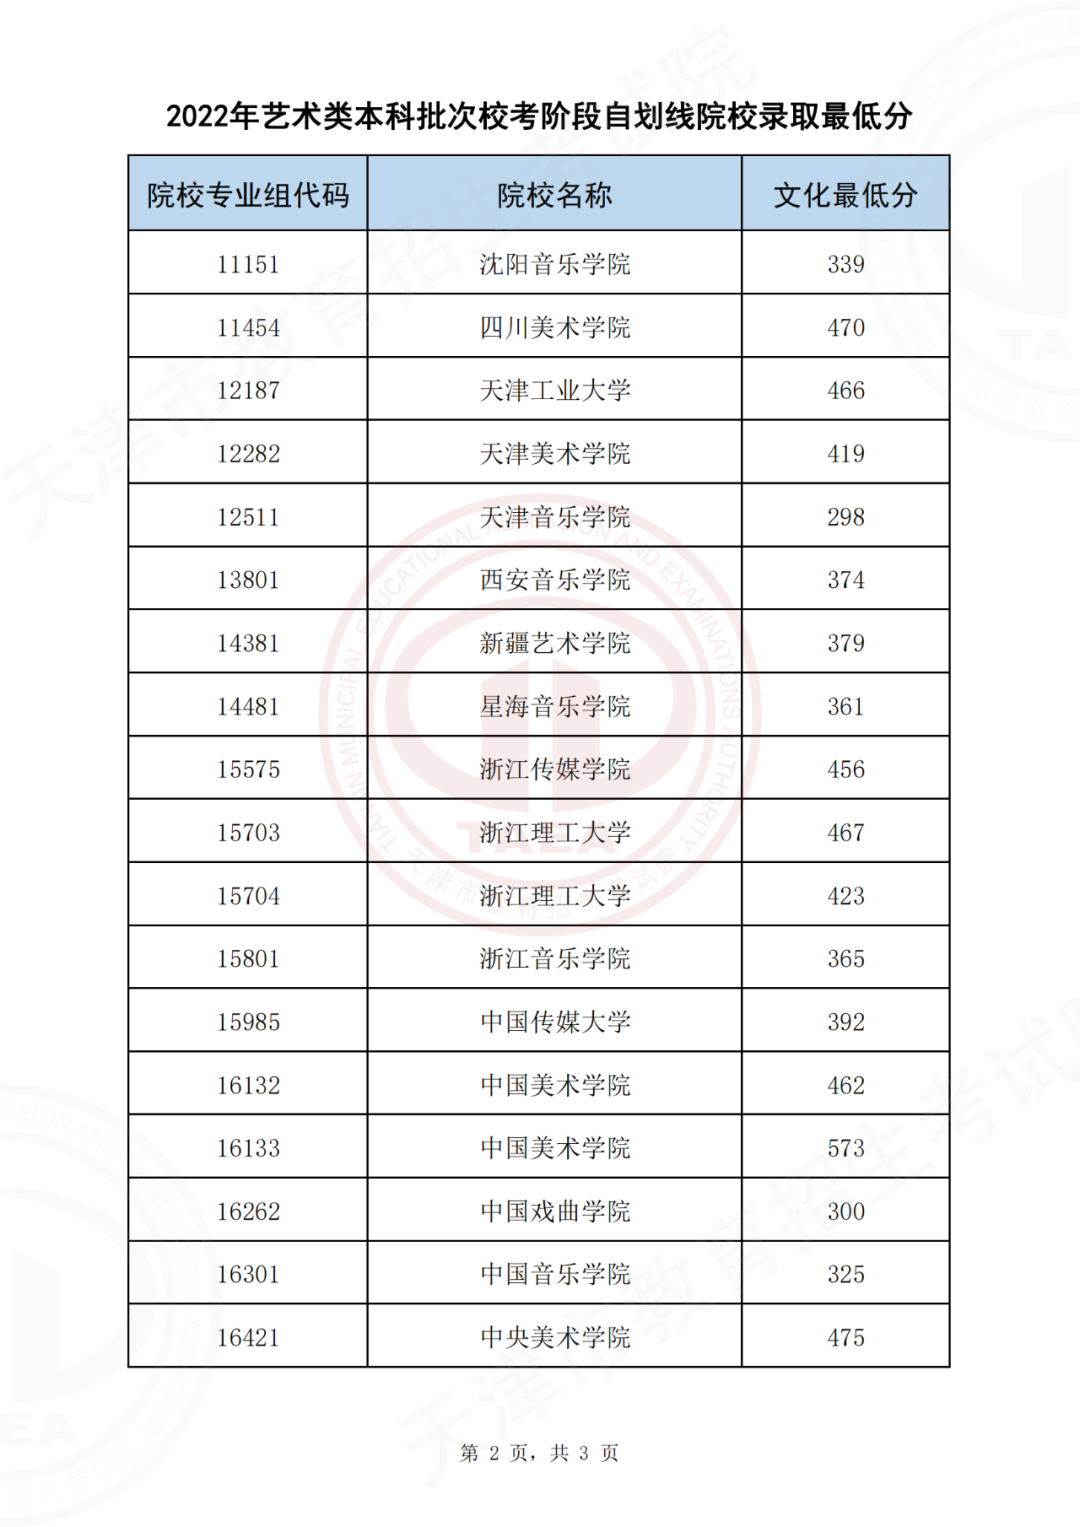 2022天津艺术类本科批校考阶段自划线院校录取最低分